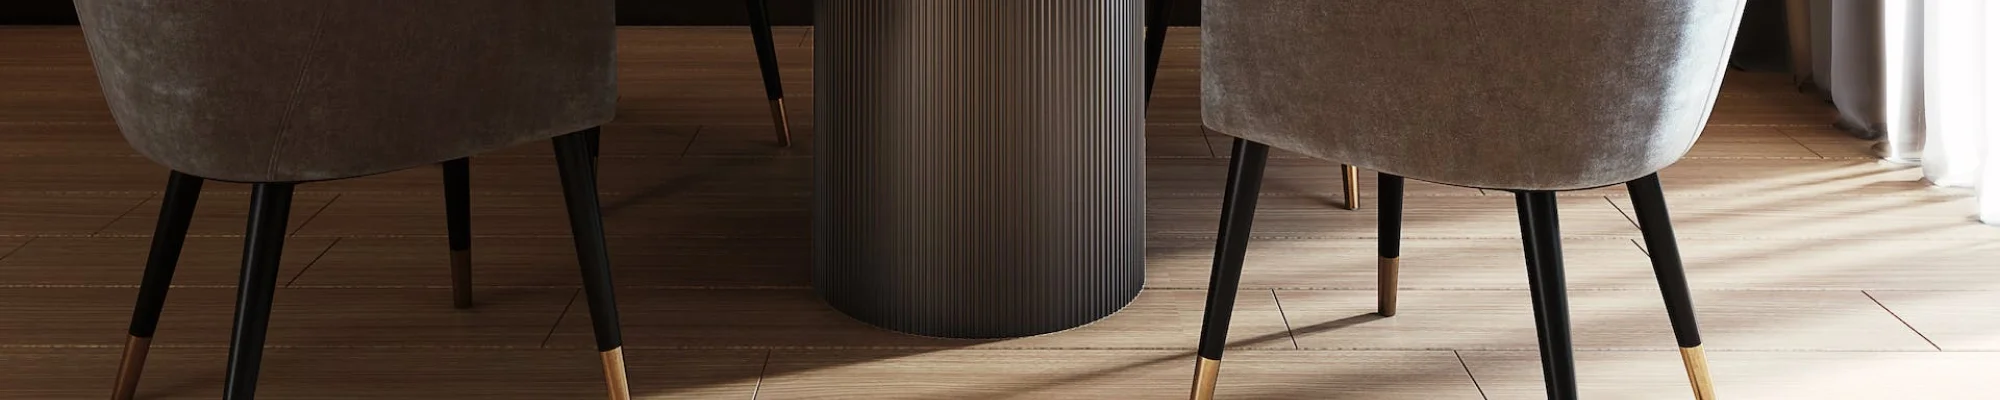 Elegant wood floors in modern, sophisticated dinning room